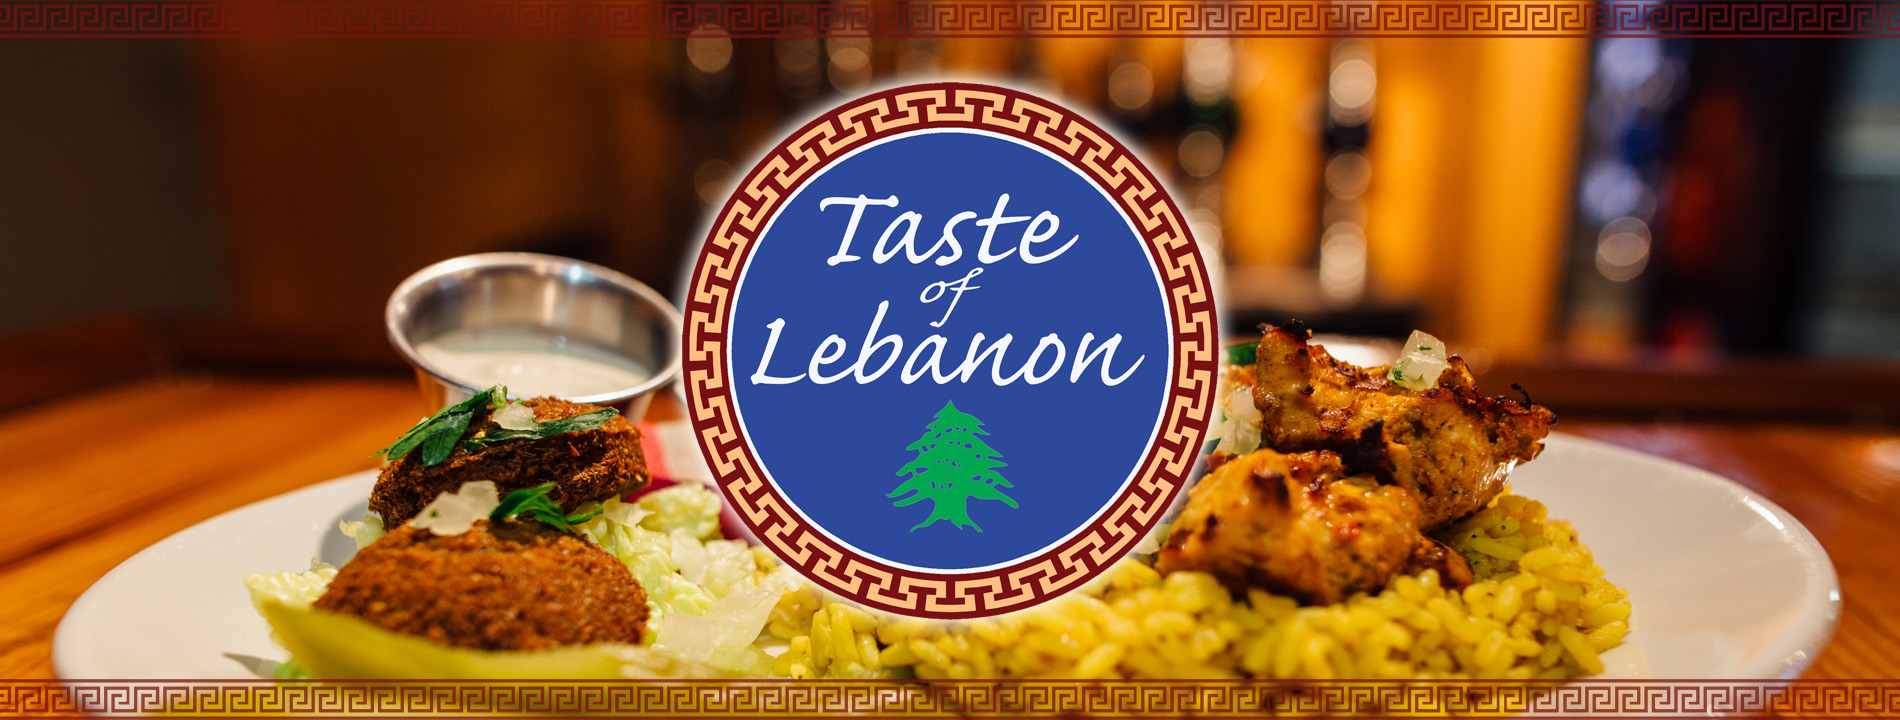 taste-of-lebanon